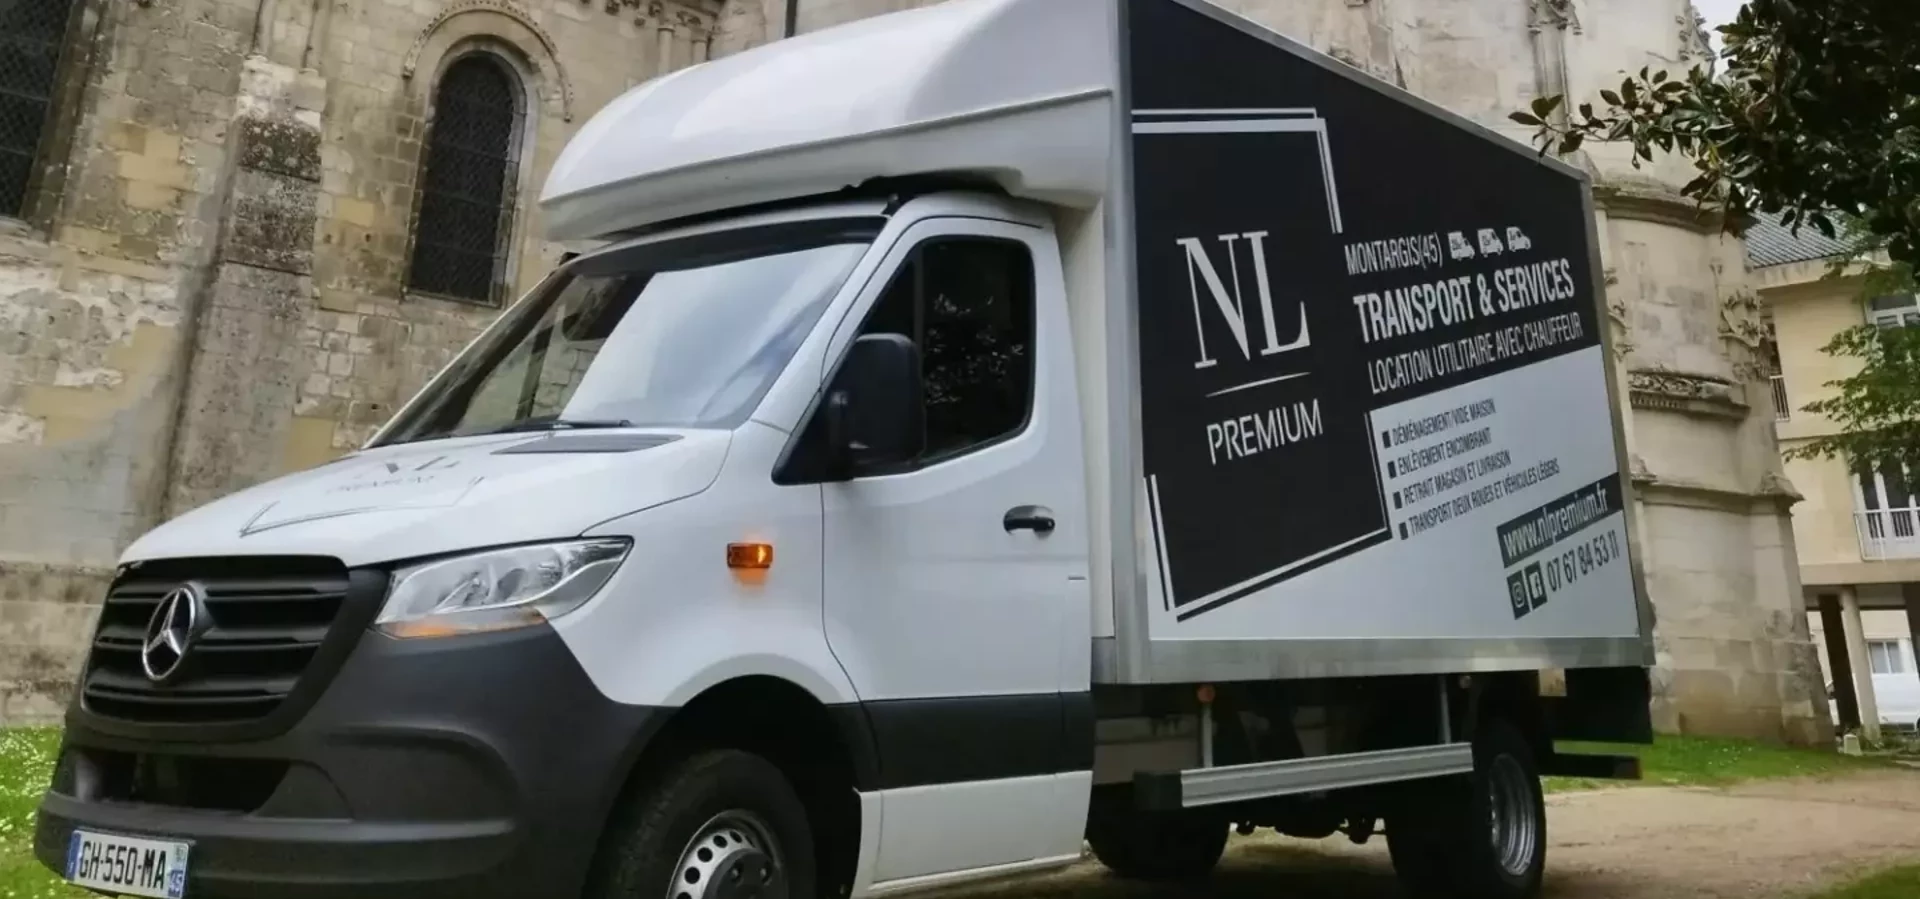 NL premium transport, service sur mesure (45) Loiret